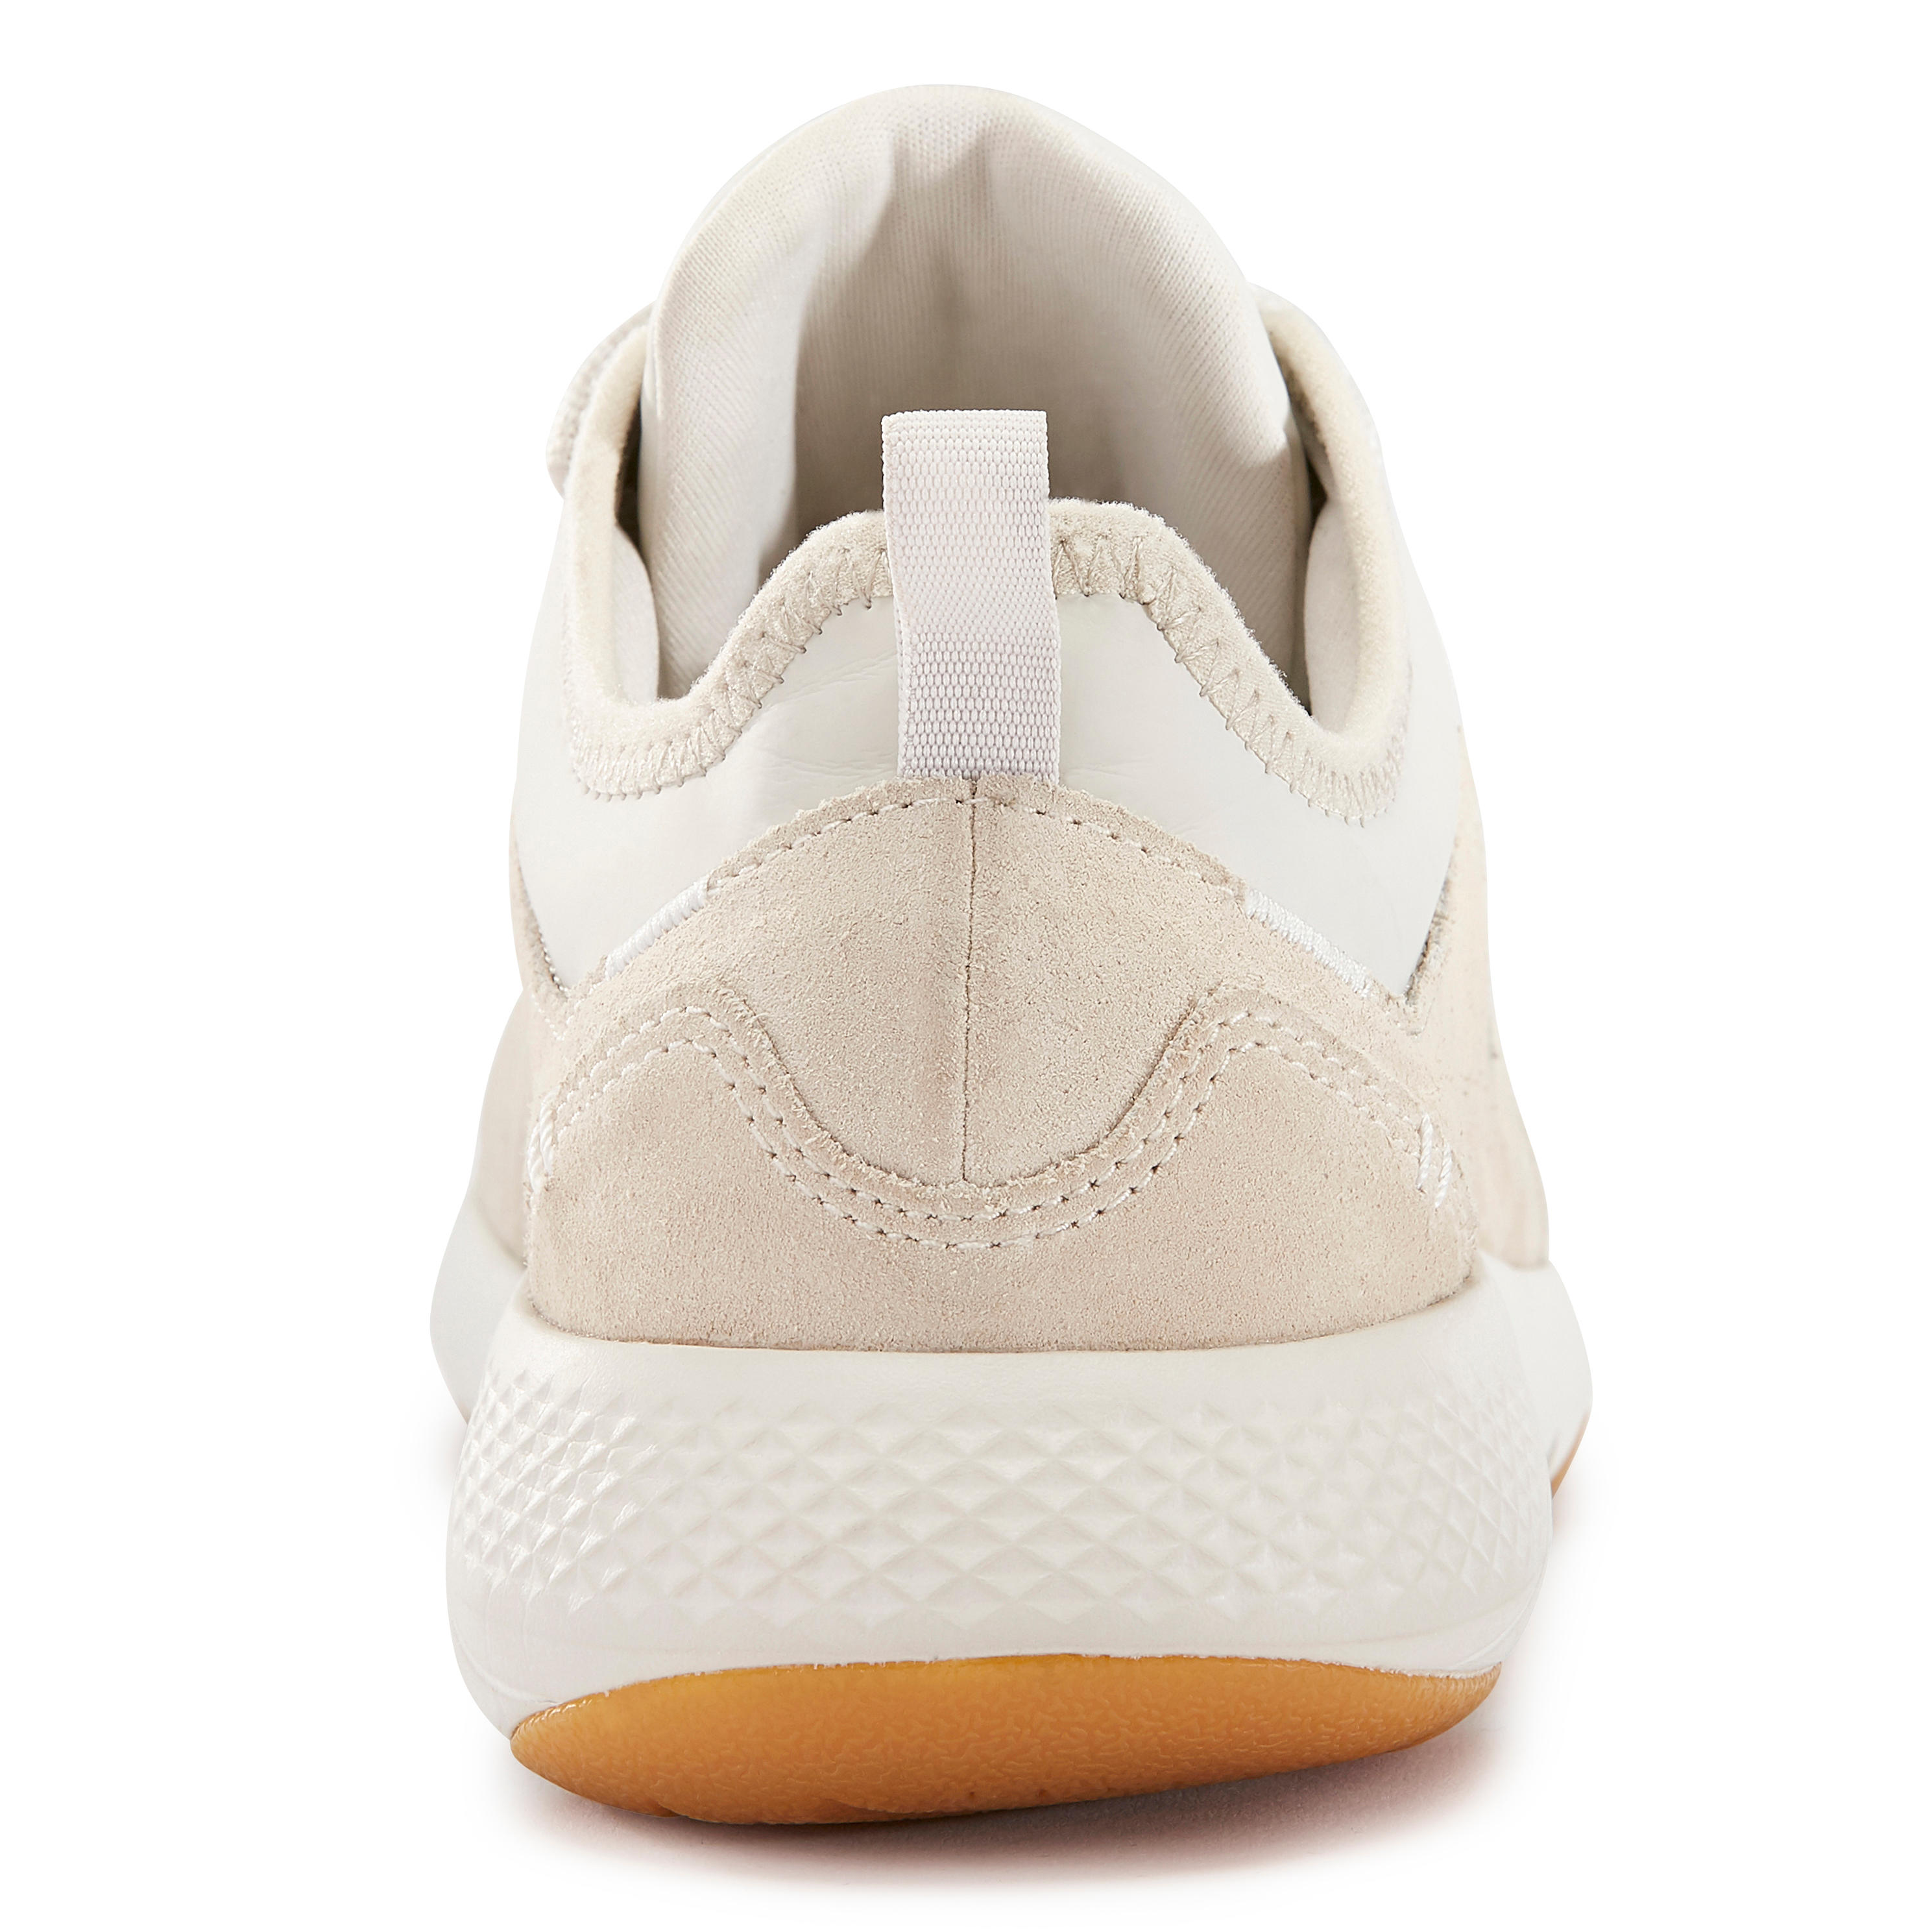 Women's City Walking Shoes Actiwalk Comfort Leather - beige 28/32